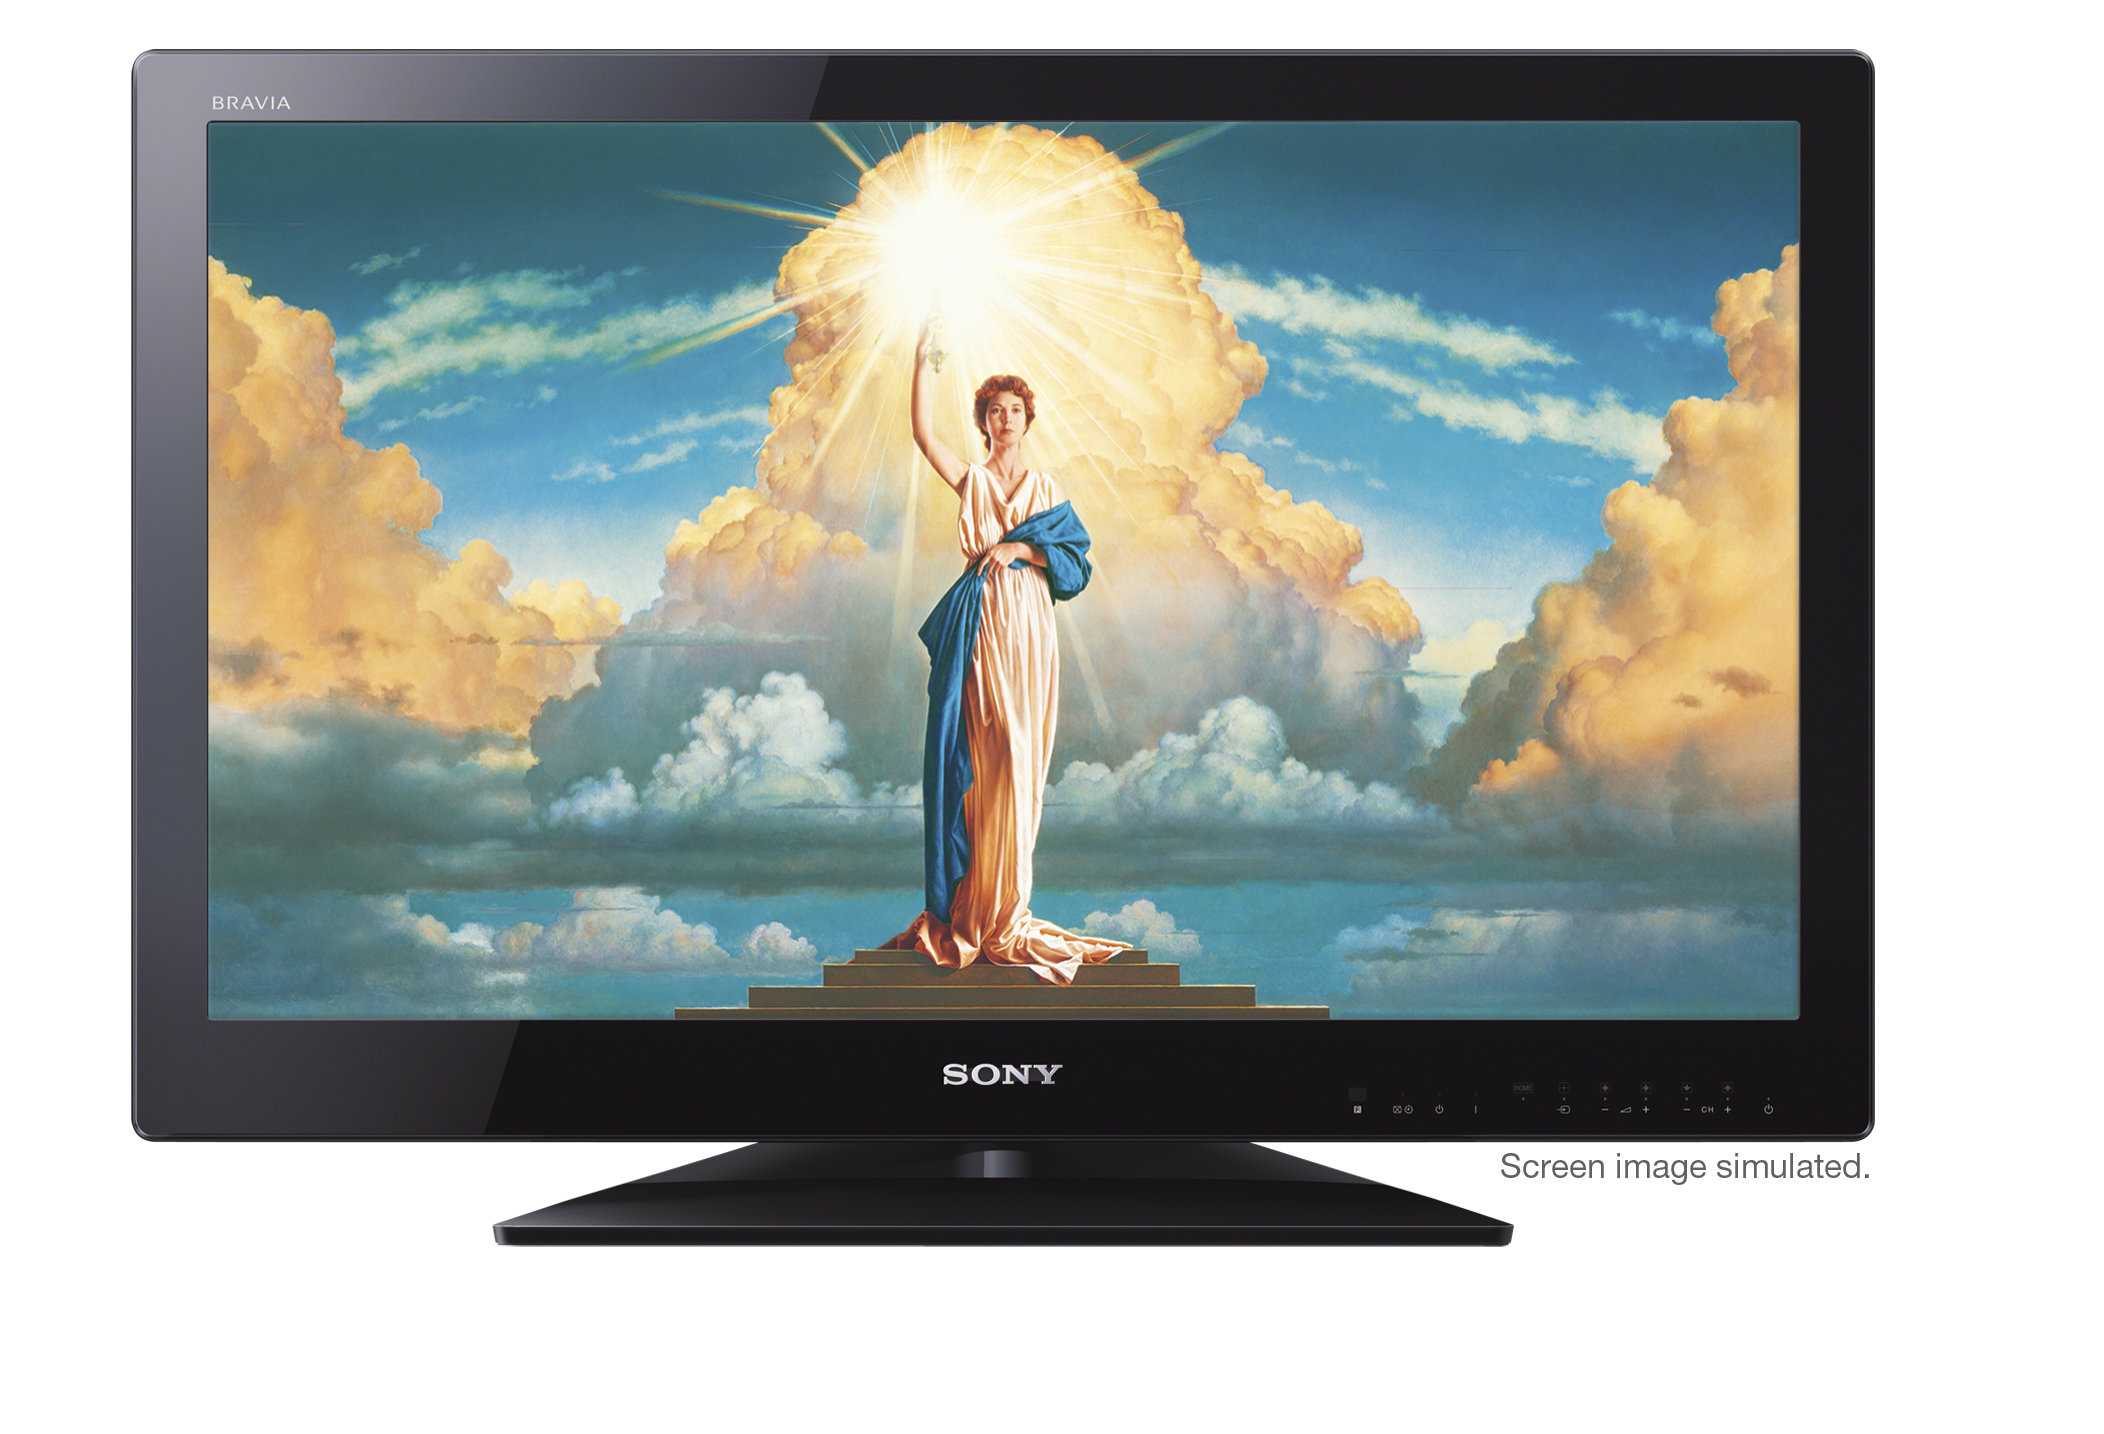 Televisión LED Sony BRAVIA de 32 HDTV, Full HD 1080p.